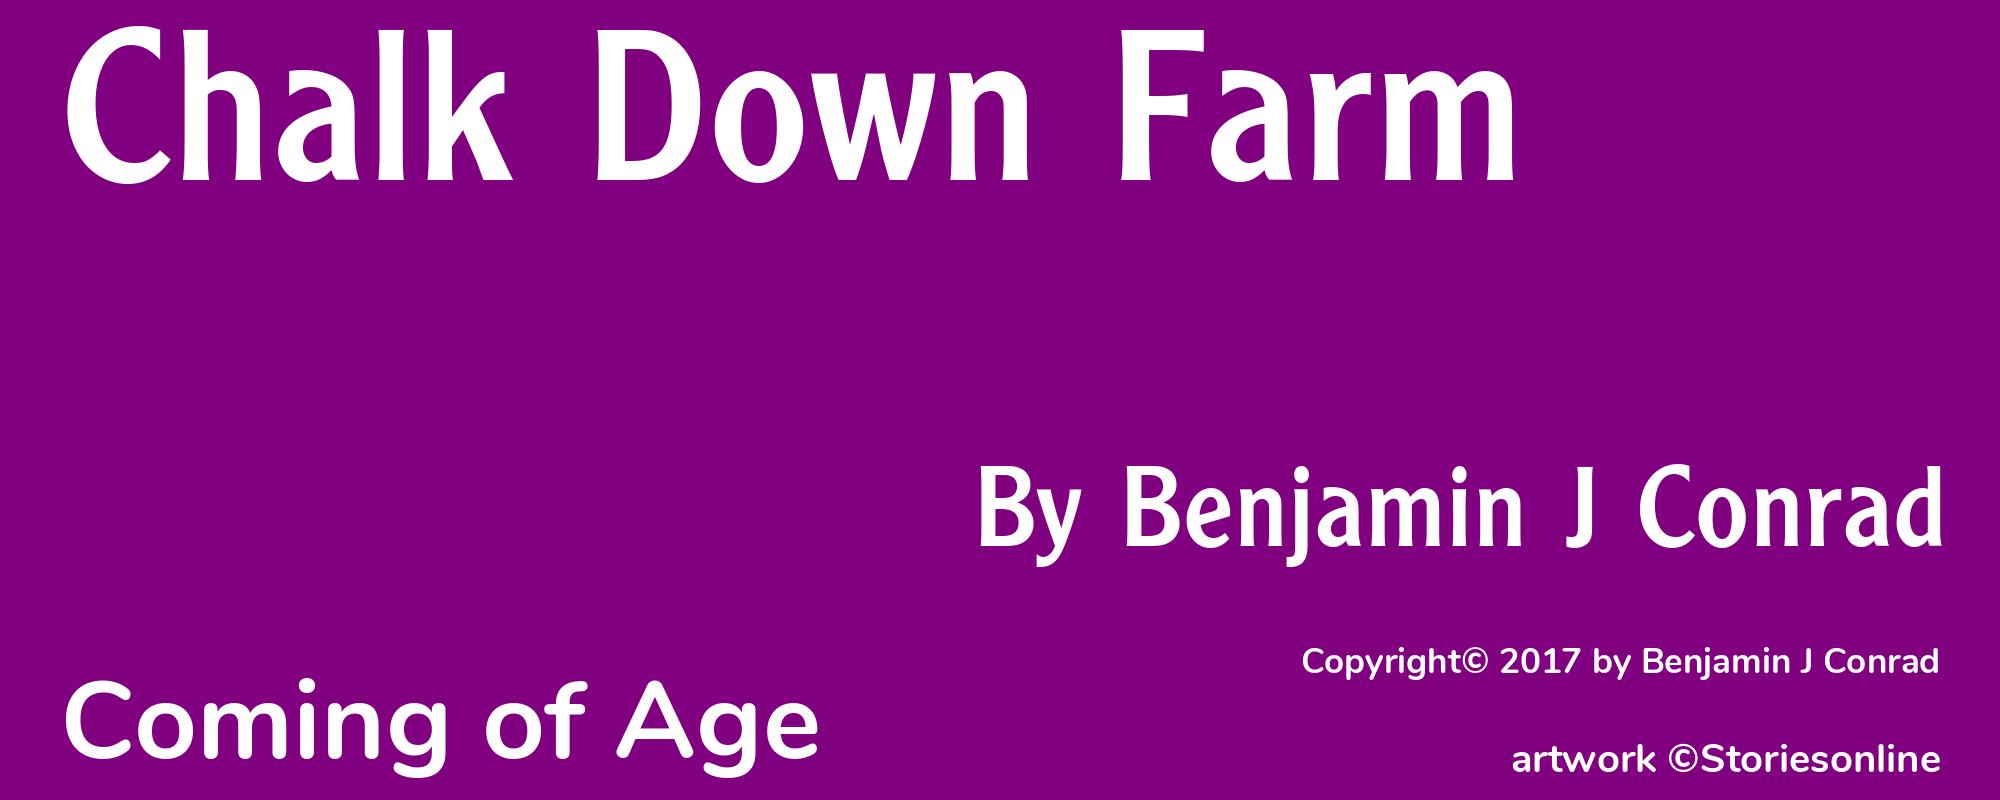 Chalk Down Farm - Cover